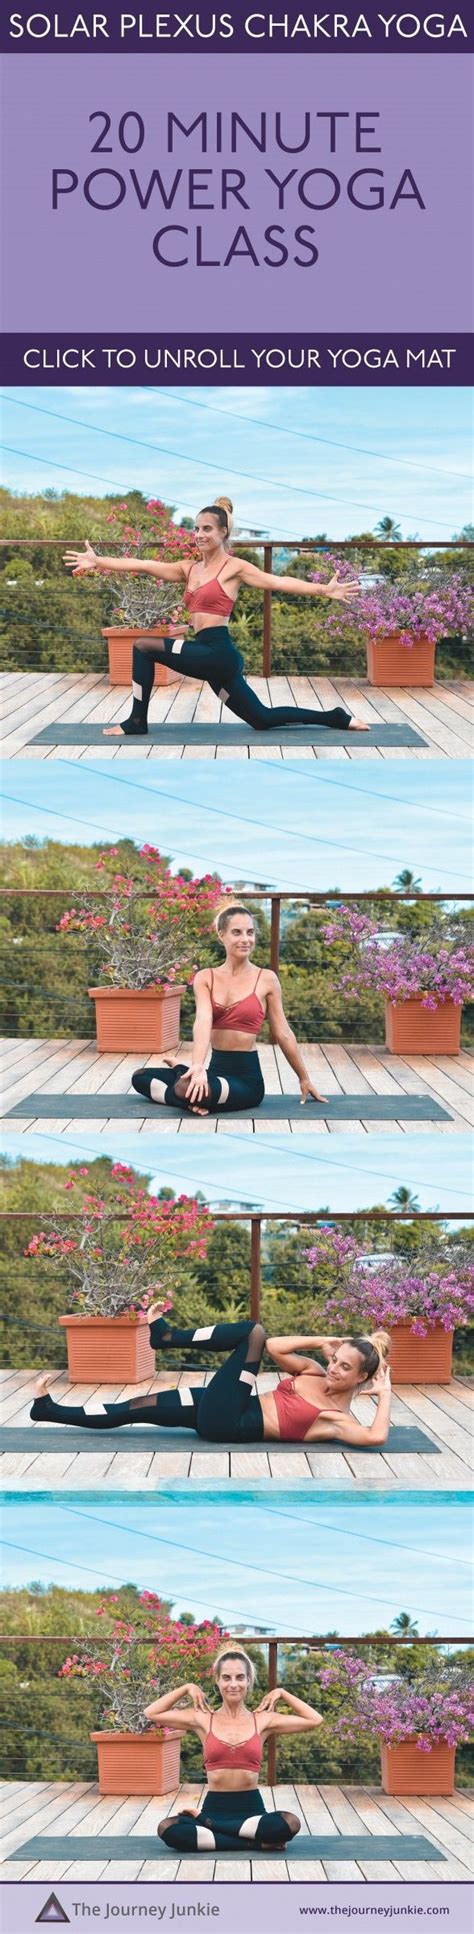 Quick Twist Yoga Class Minute Practice To Awaken Your Solar Plexus The Journey Junkie